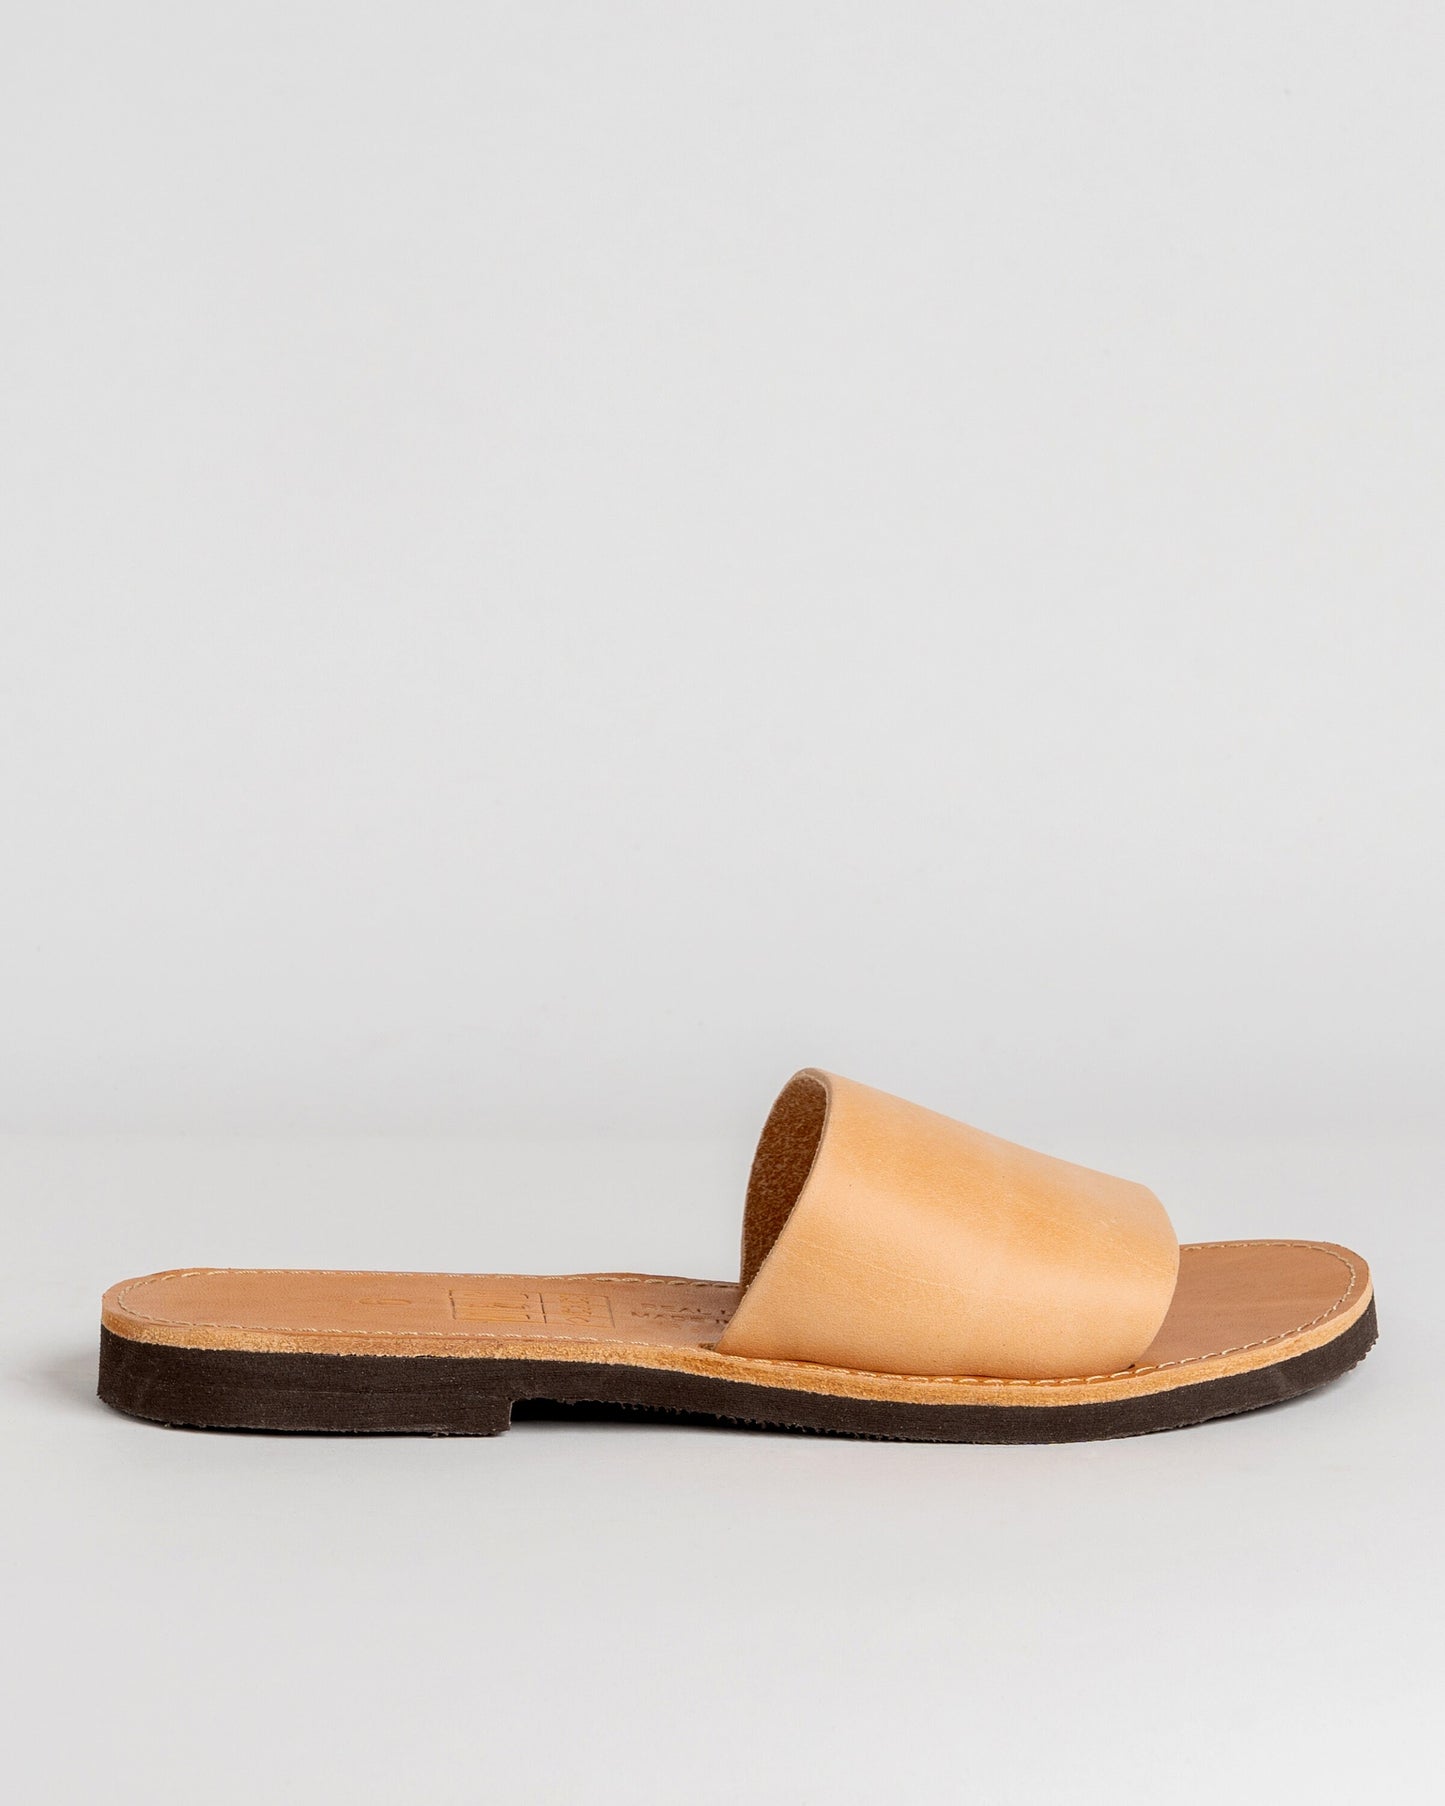 Leather women sandals, Leather slides women, Sandales grecques femme